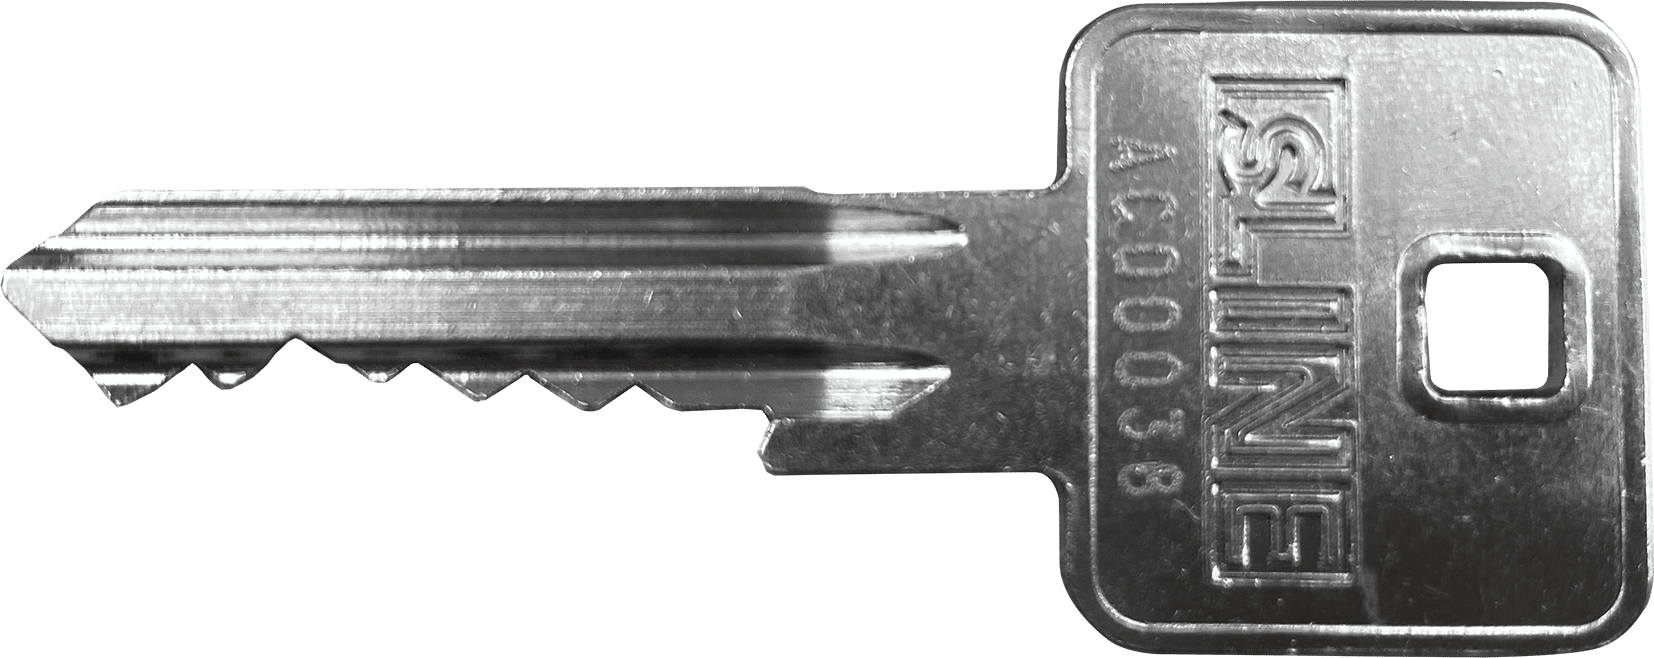 Mehrschlüssel für gleichschließende sLINE Zylinder, Schließung AC00038 & AC00025